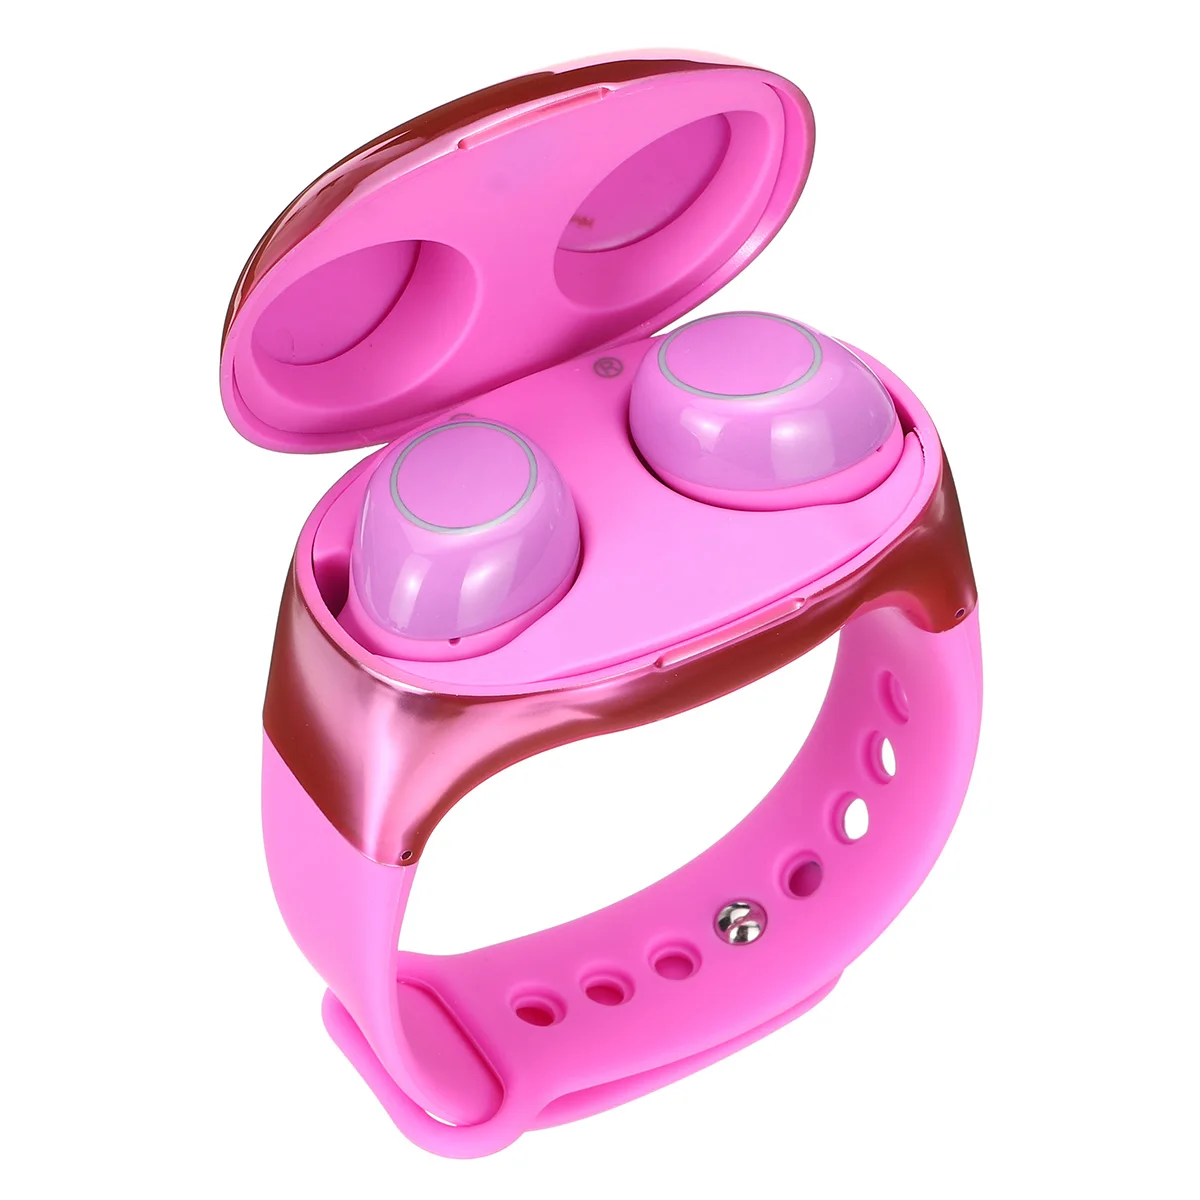 TWS беспроводной bluetooth 5,0 сенсорный ремешок наушники 2 в 1 браслет стерео Спортивная гарнитура наушники для iPhone Android телефон - Цвет: Розовый